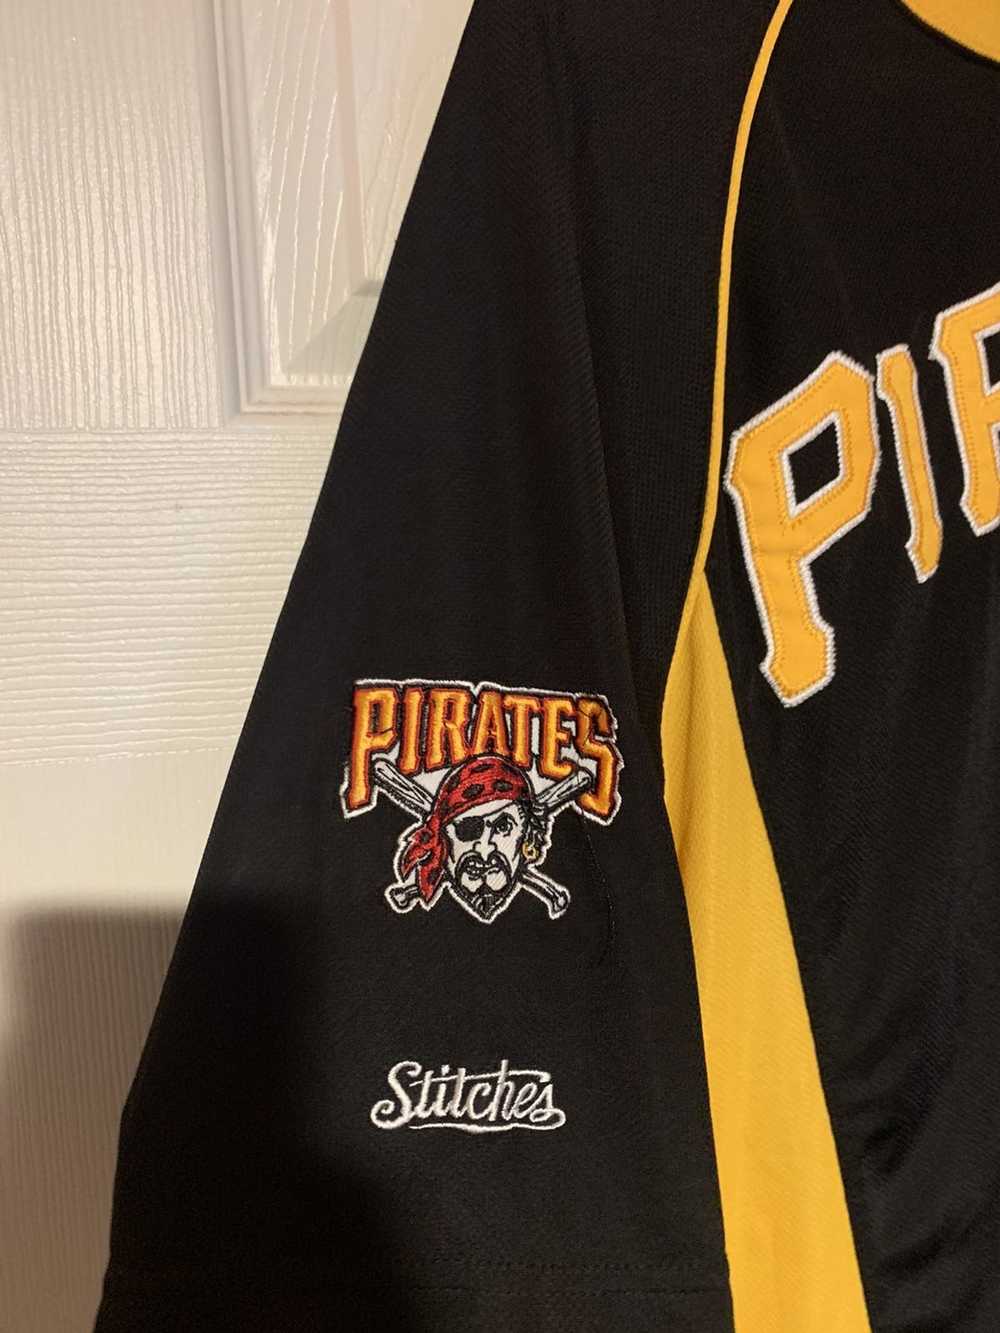 Vintage Vintage Pittsburgh Pirates Training Shirt - image 2